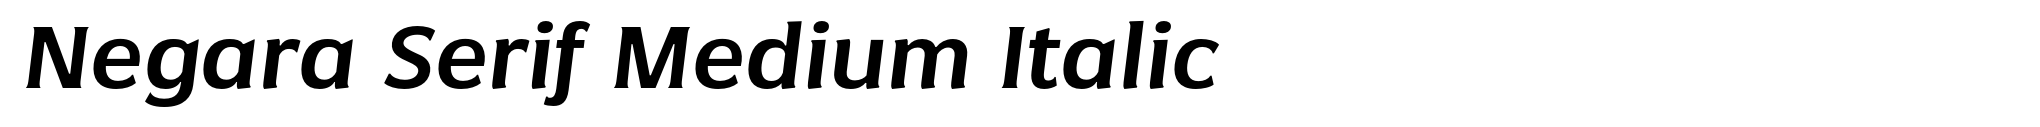 Negara Serif Medium Italic image